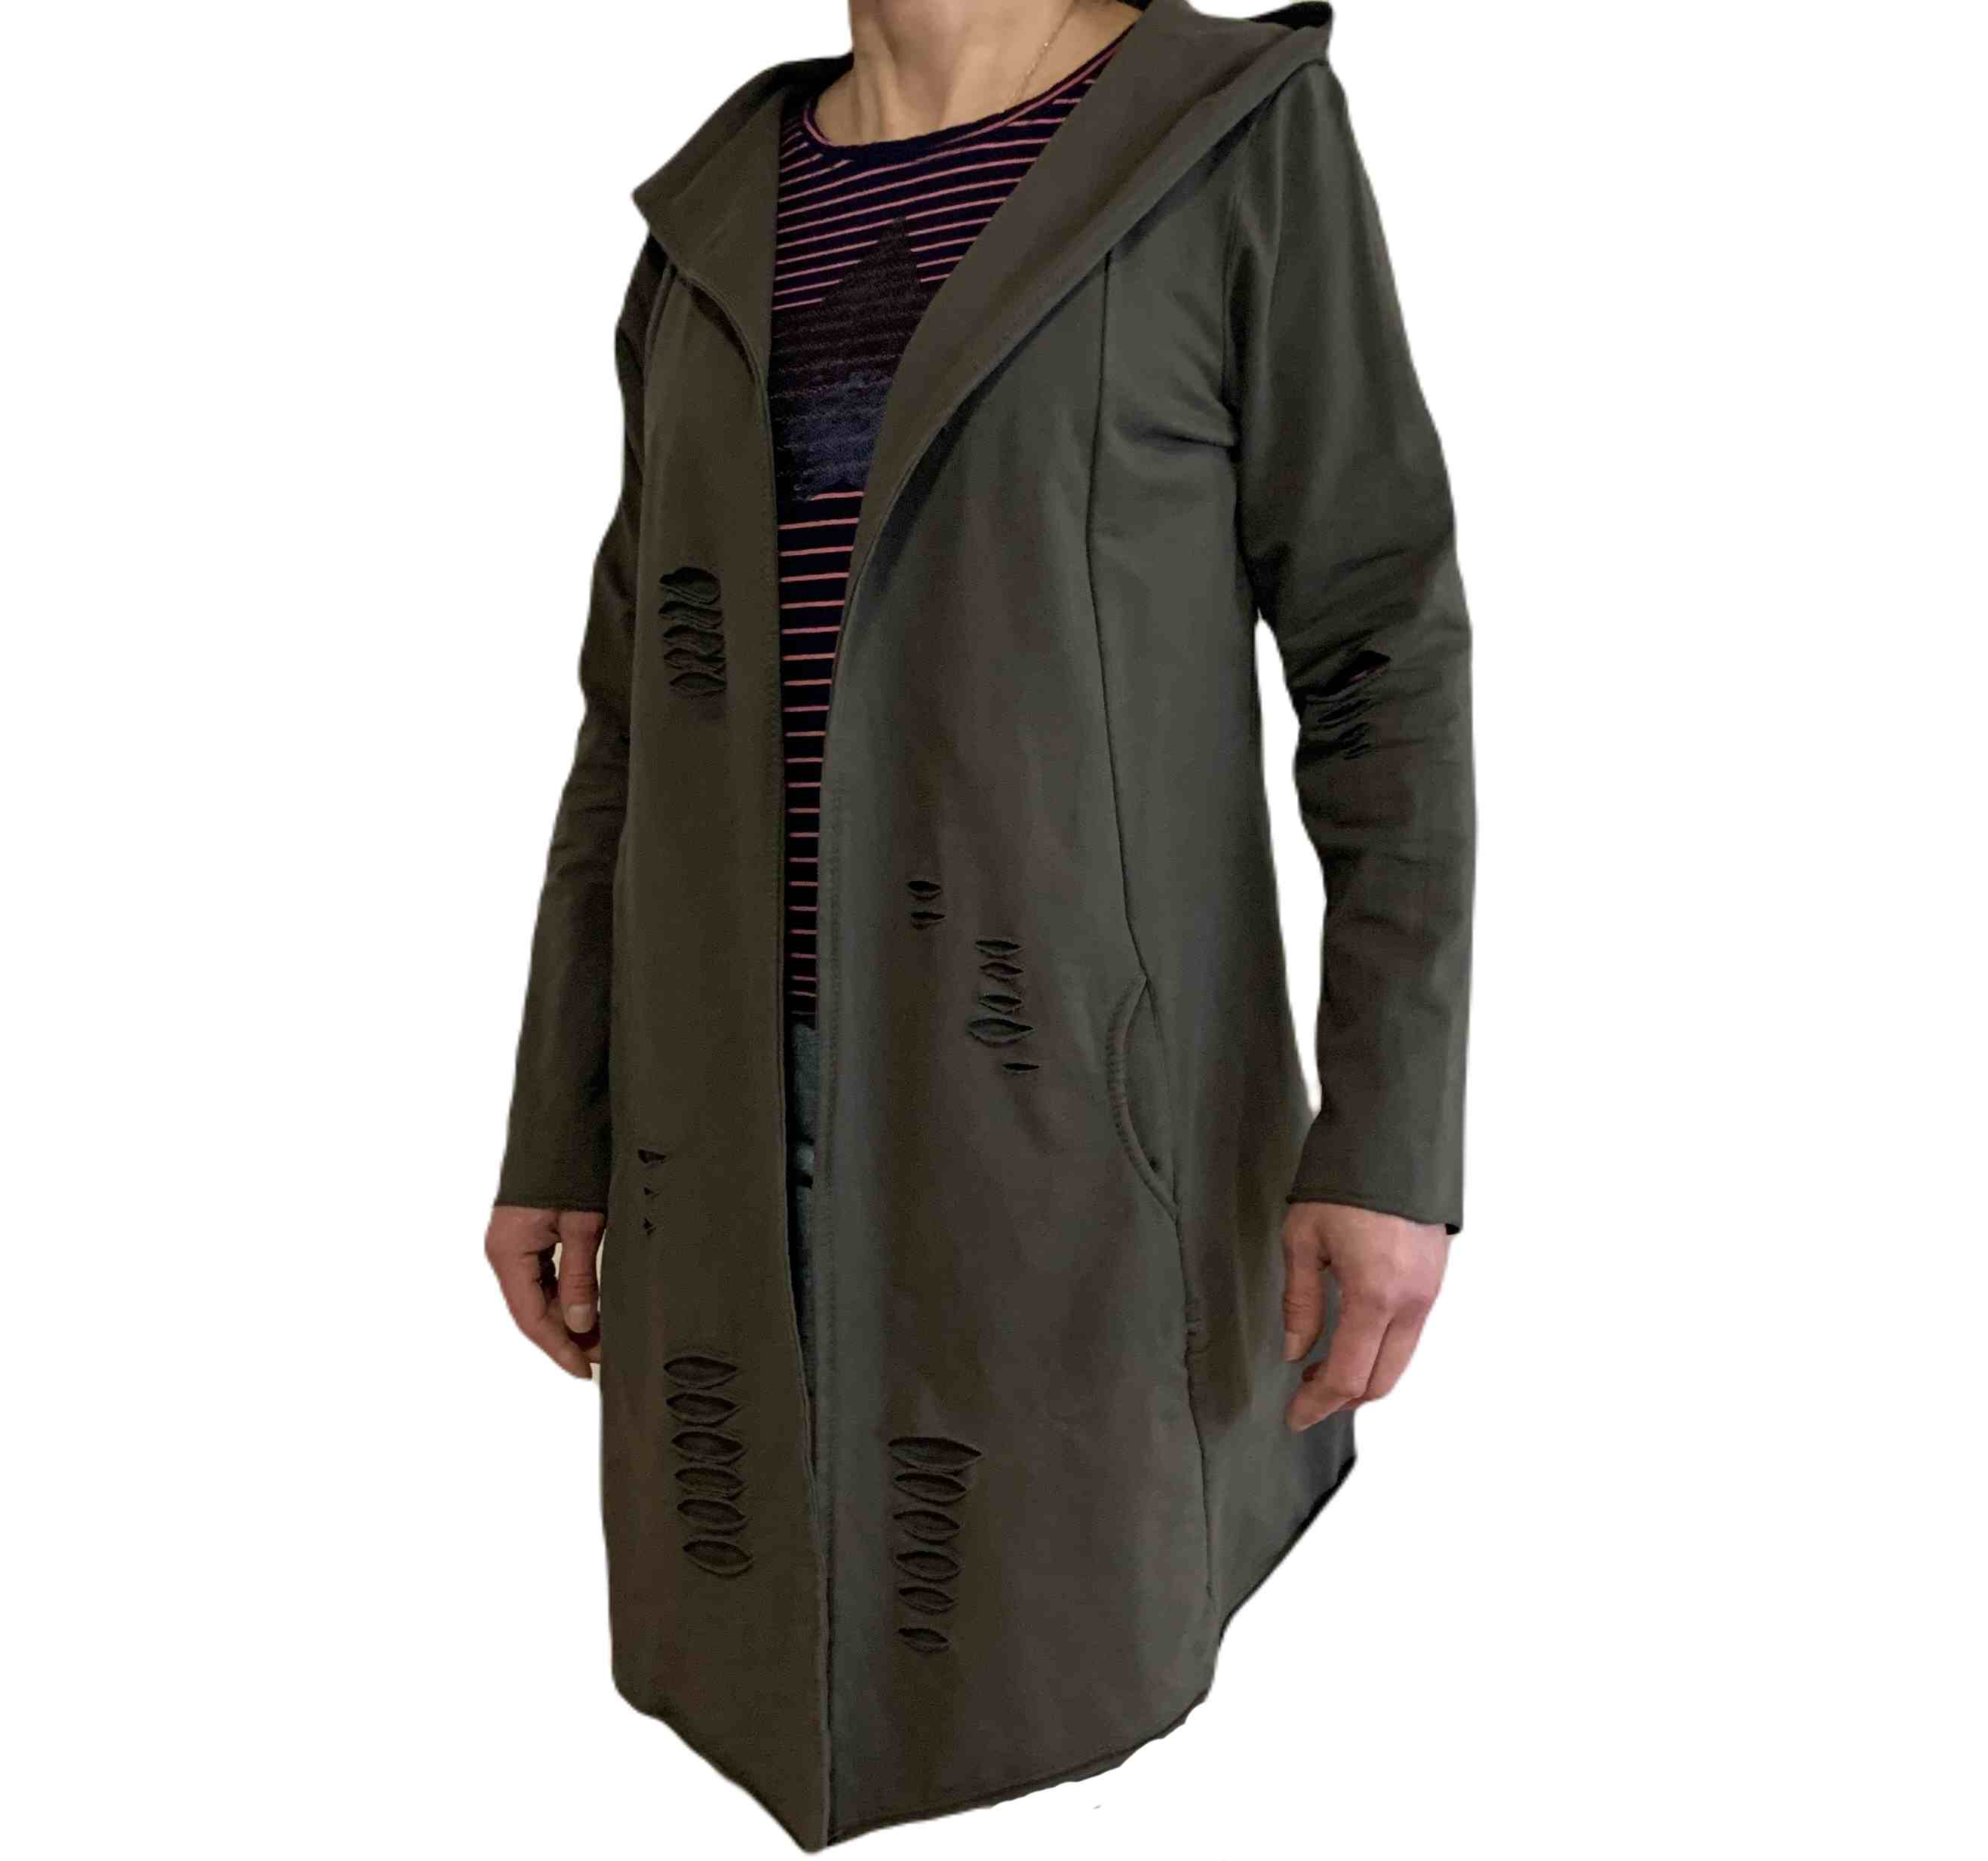 Dámská dlouhá mikina s kapucí - kabátek M